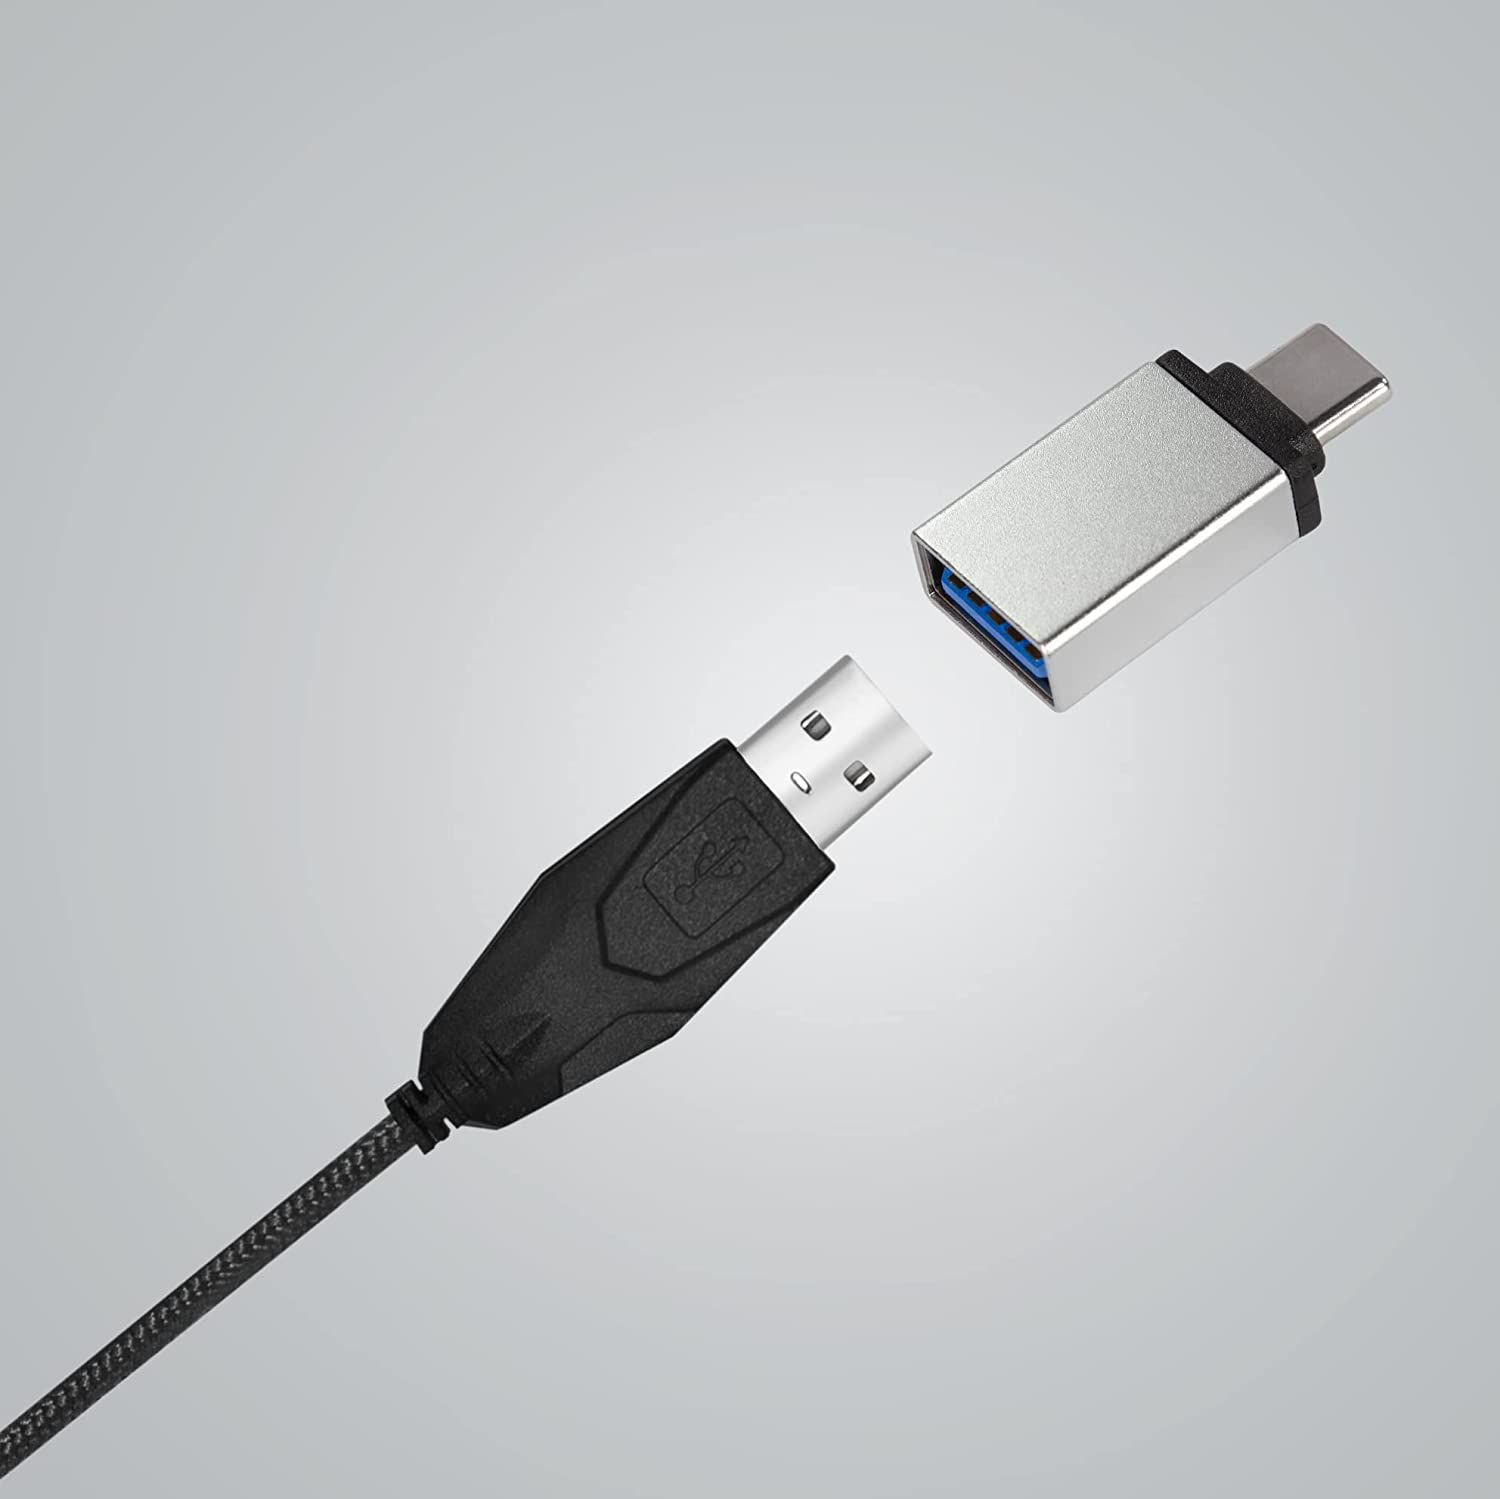 COFI Adapter USB Adapter